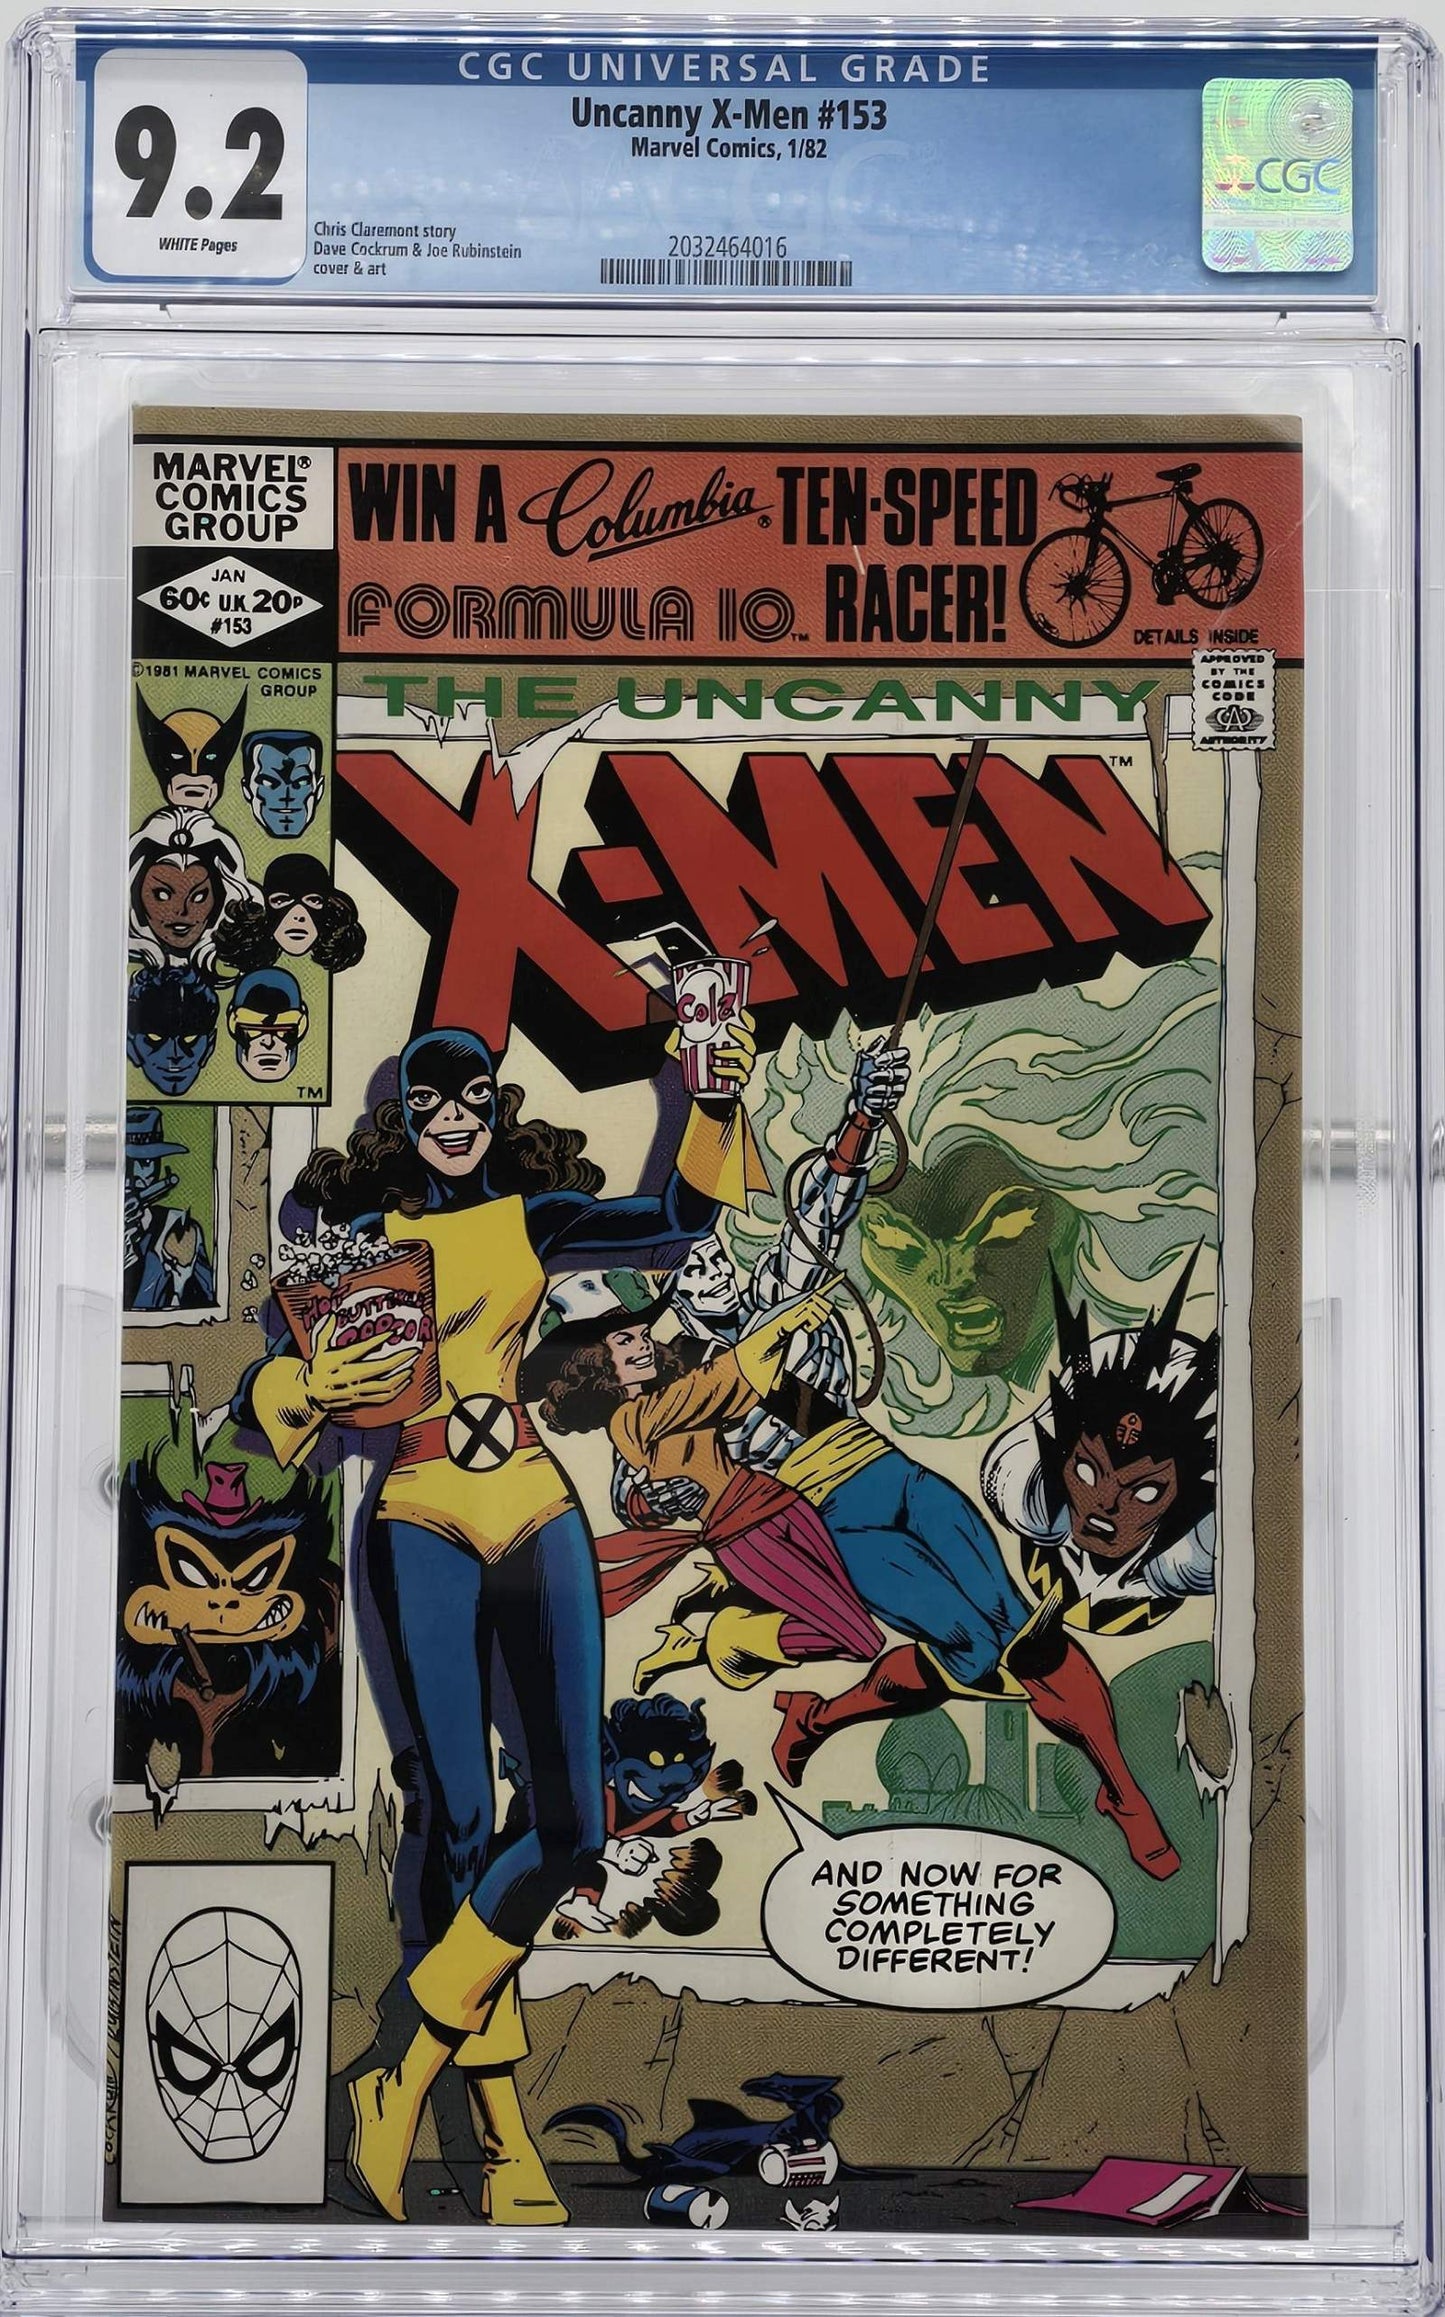 Uncanny X-Men Vol 1 #153 CGC 9.2